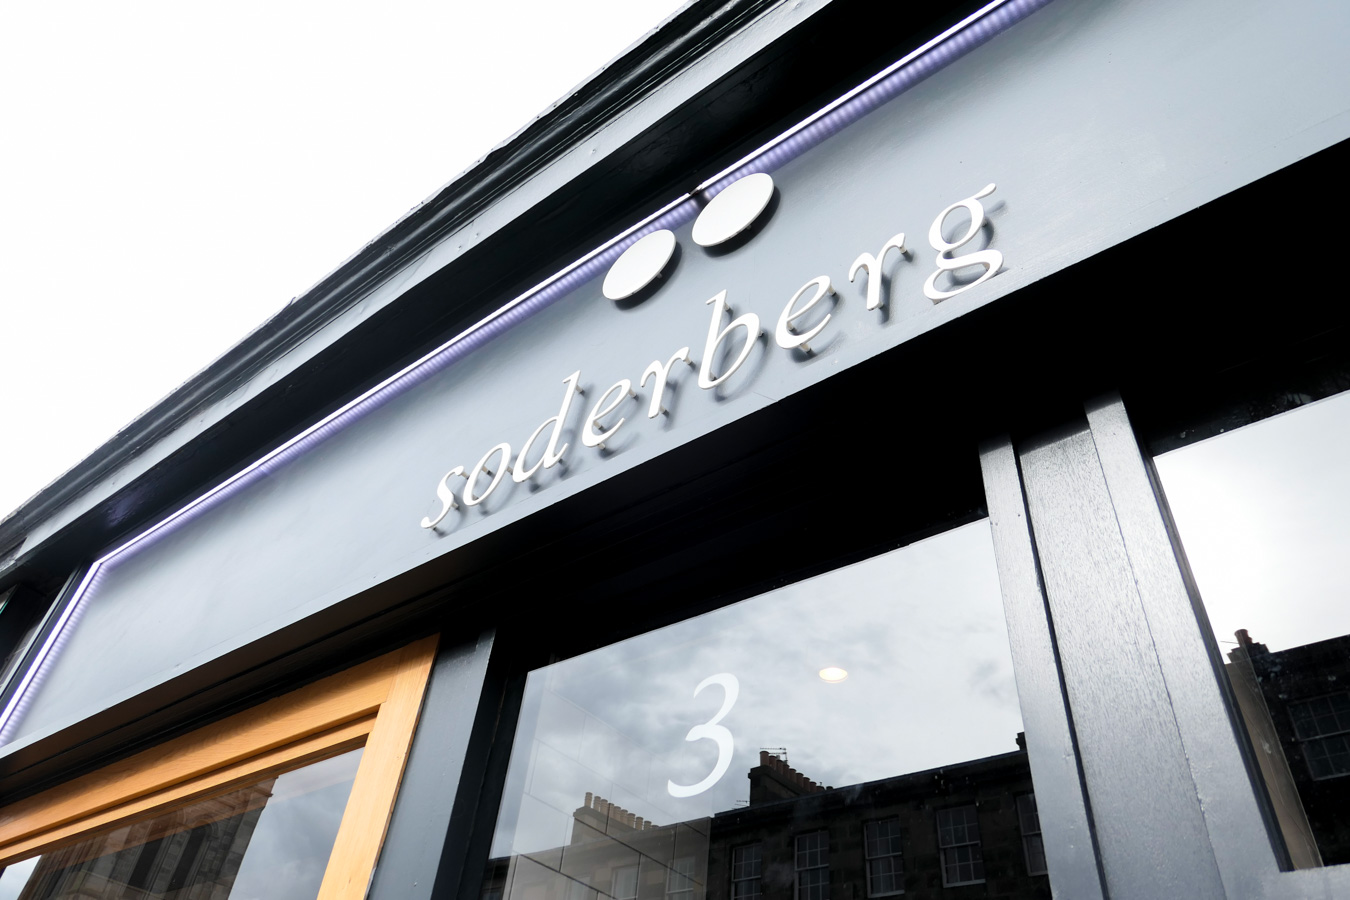 Stockbridge Edinburgh Restaurants Travel Guide - Soderberg